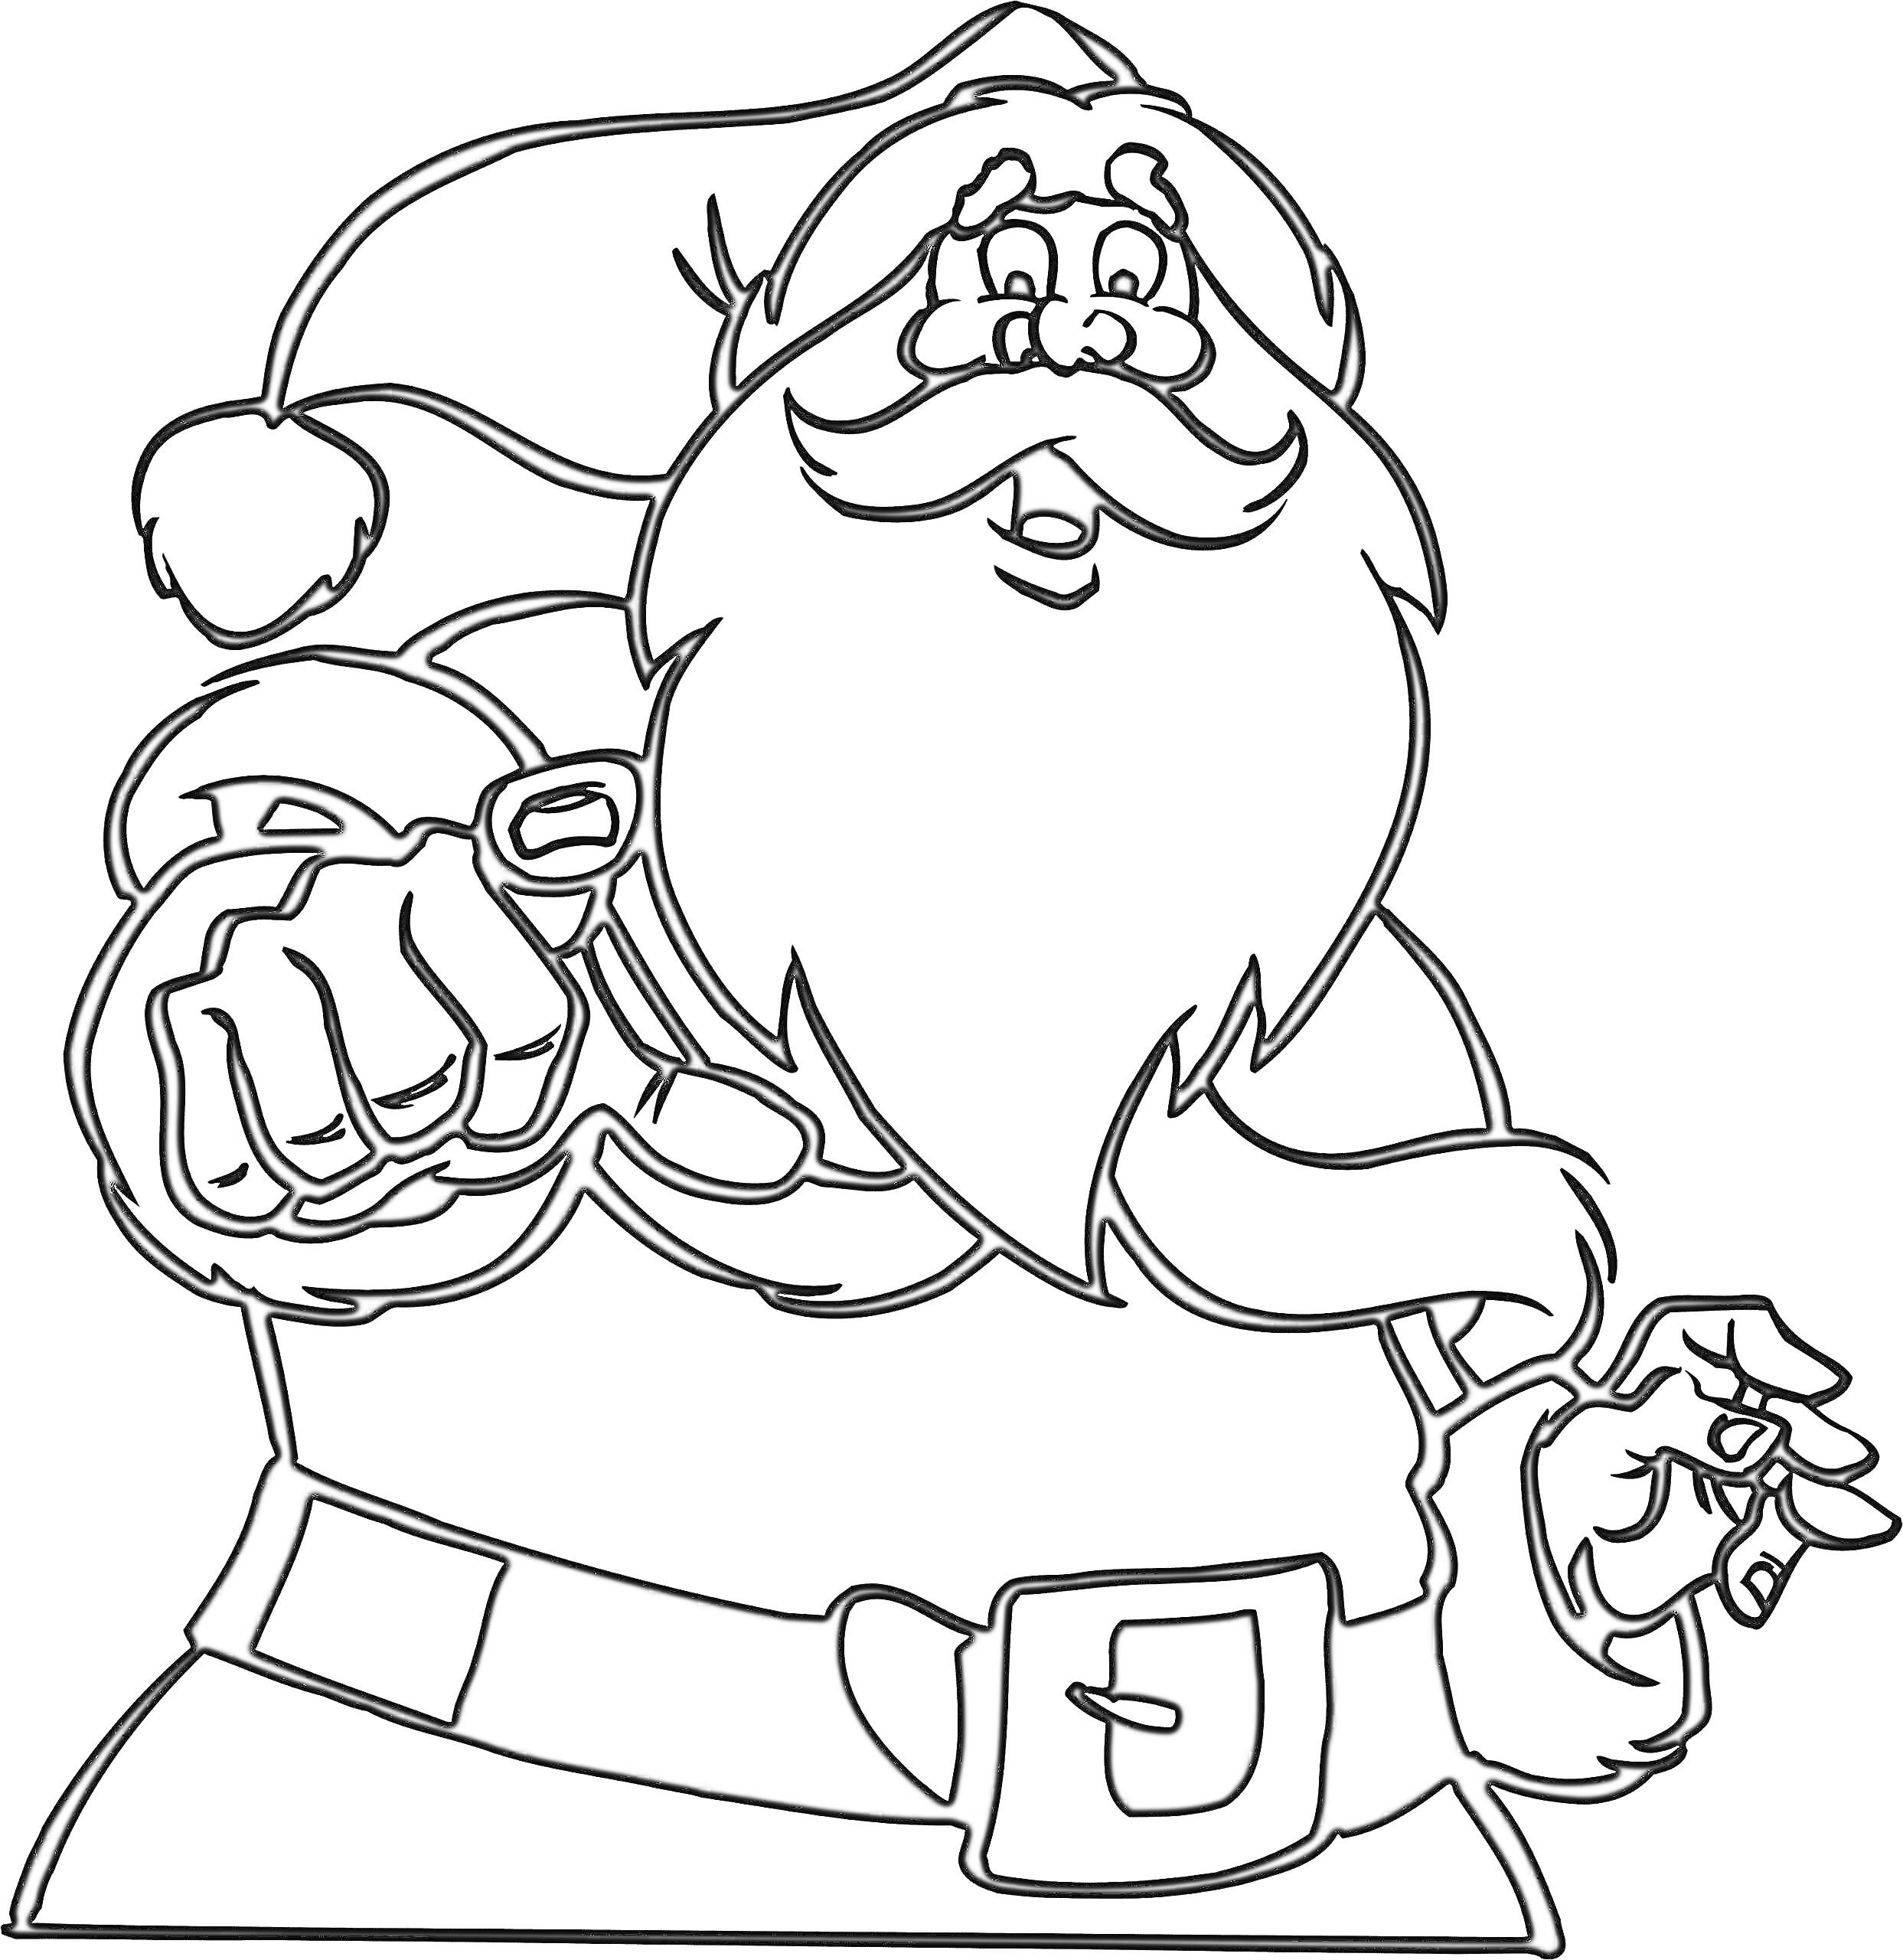 Раскраска Санта Клаус в шапке, с бородой, ремнем и рукавицами, указывающий пальцем вперед